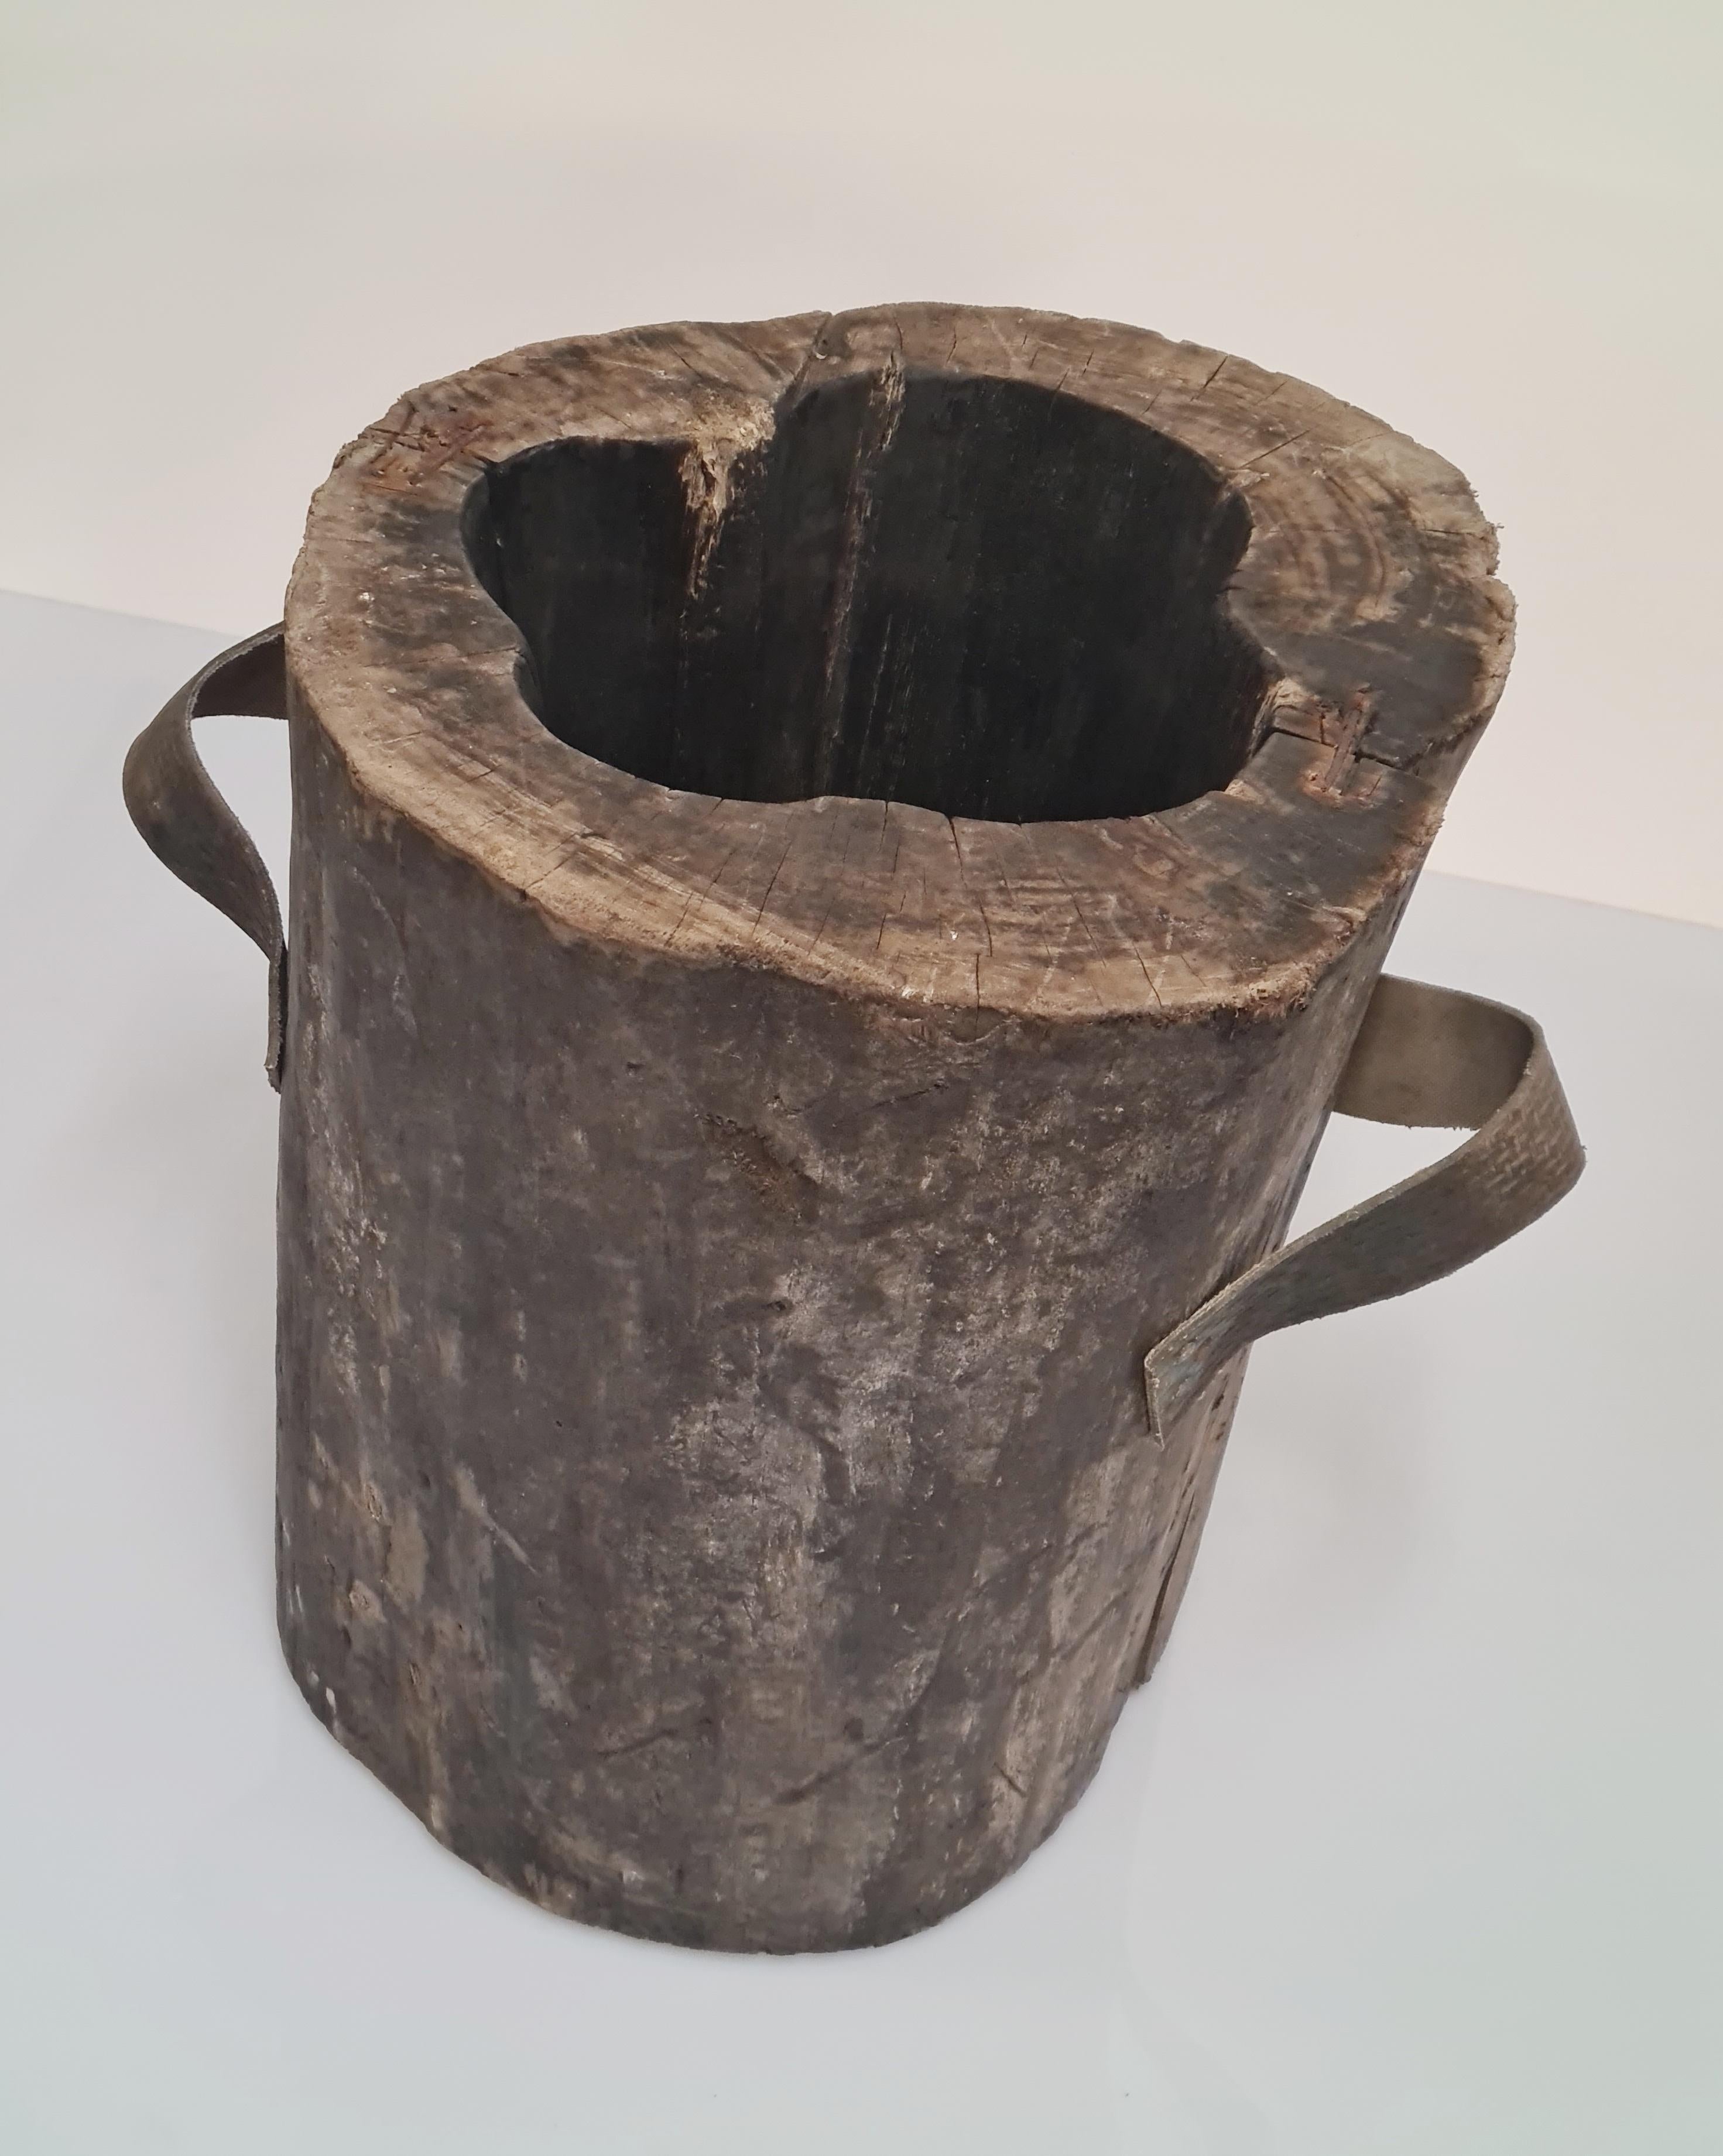 Ein Kleinod für Sammler! Frühe handgeschnitzte Holzform von Alvar Aalto für die ikonische Vase Nr. 3032, die Aalto in den 1930er Jahren entwarf. 

Die Form ist aus einem älteren Baumstumpf handgeschnitzt und hat die Originalgriffe. In der Form ist